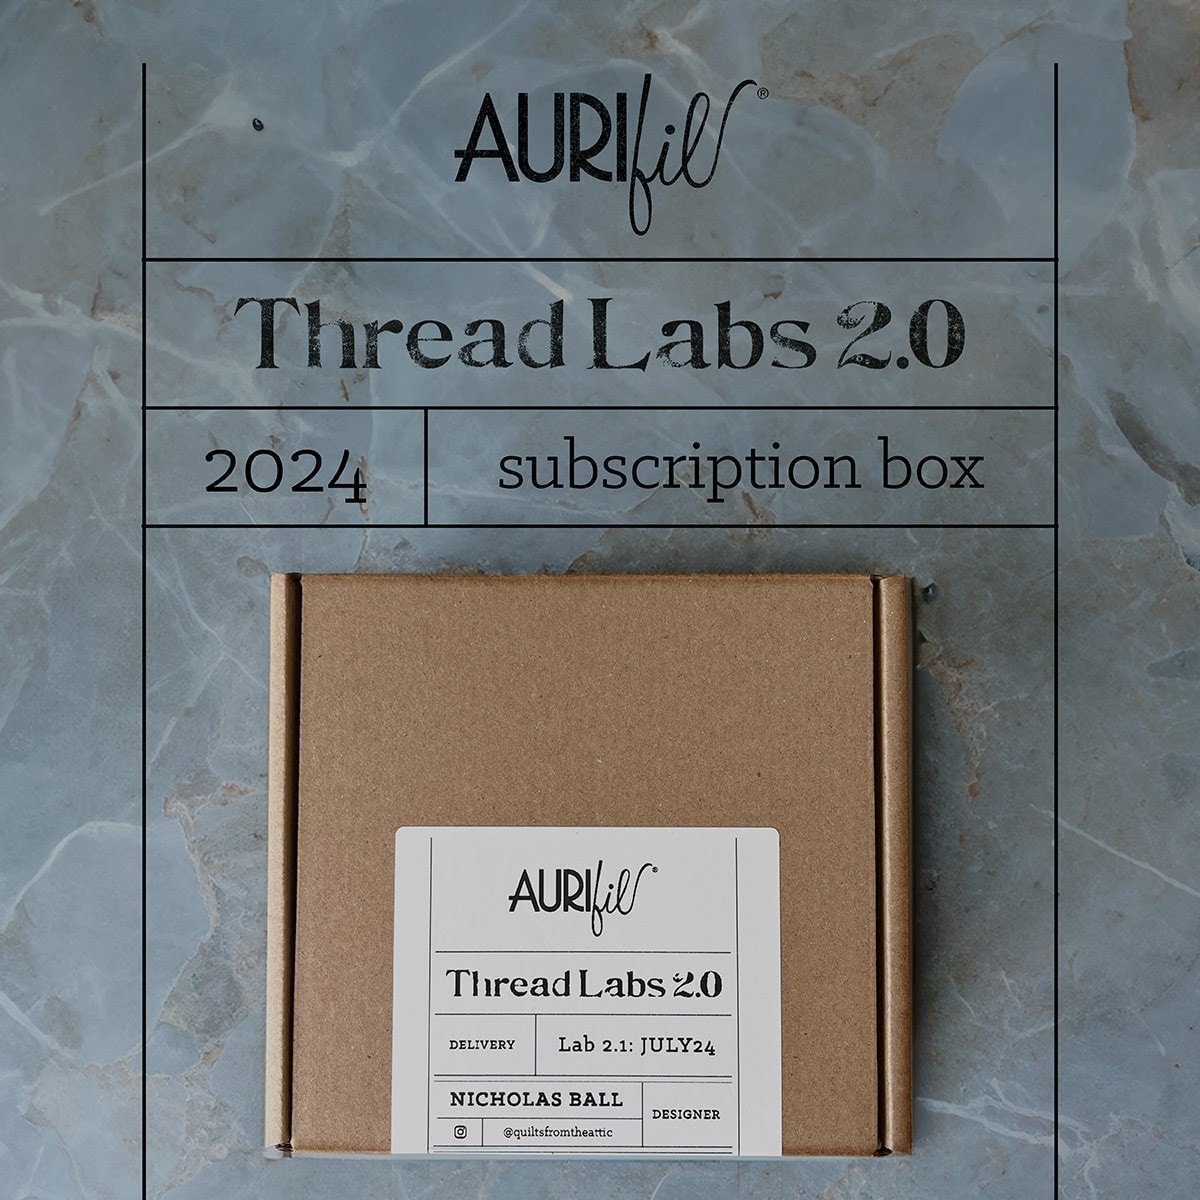 Aurifil Thread Labs 2.0